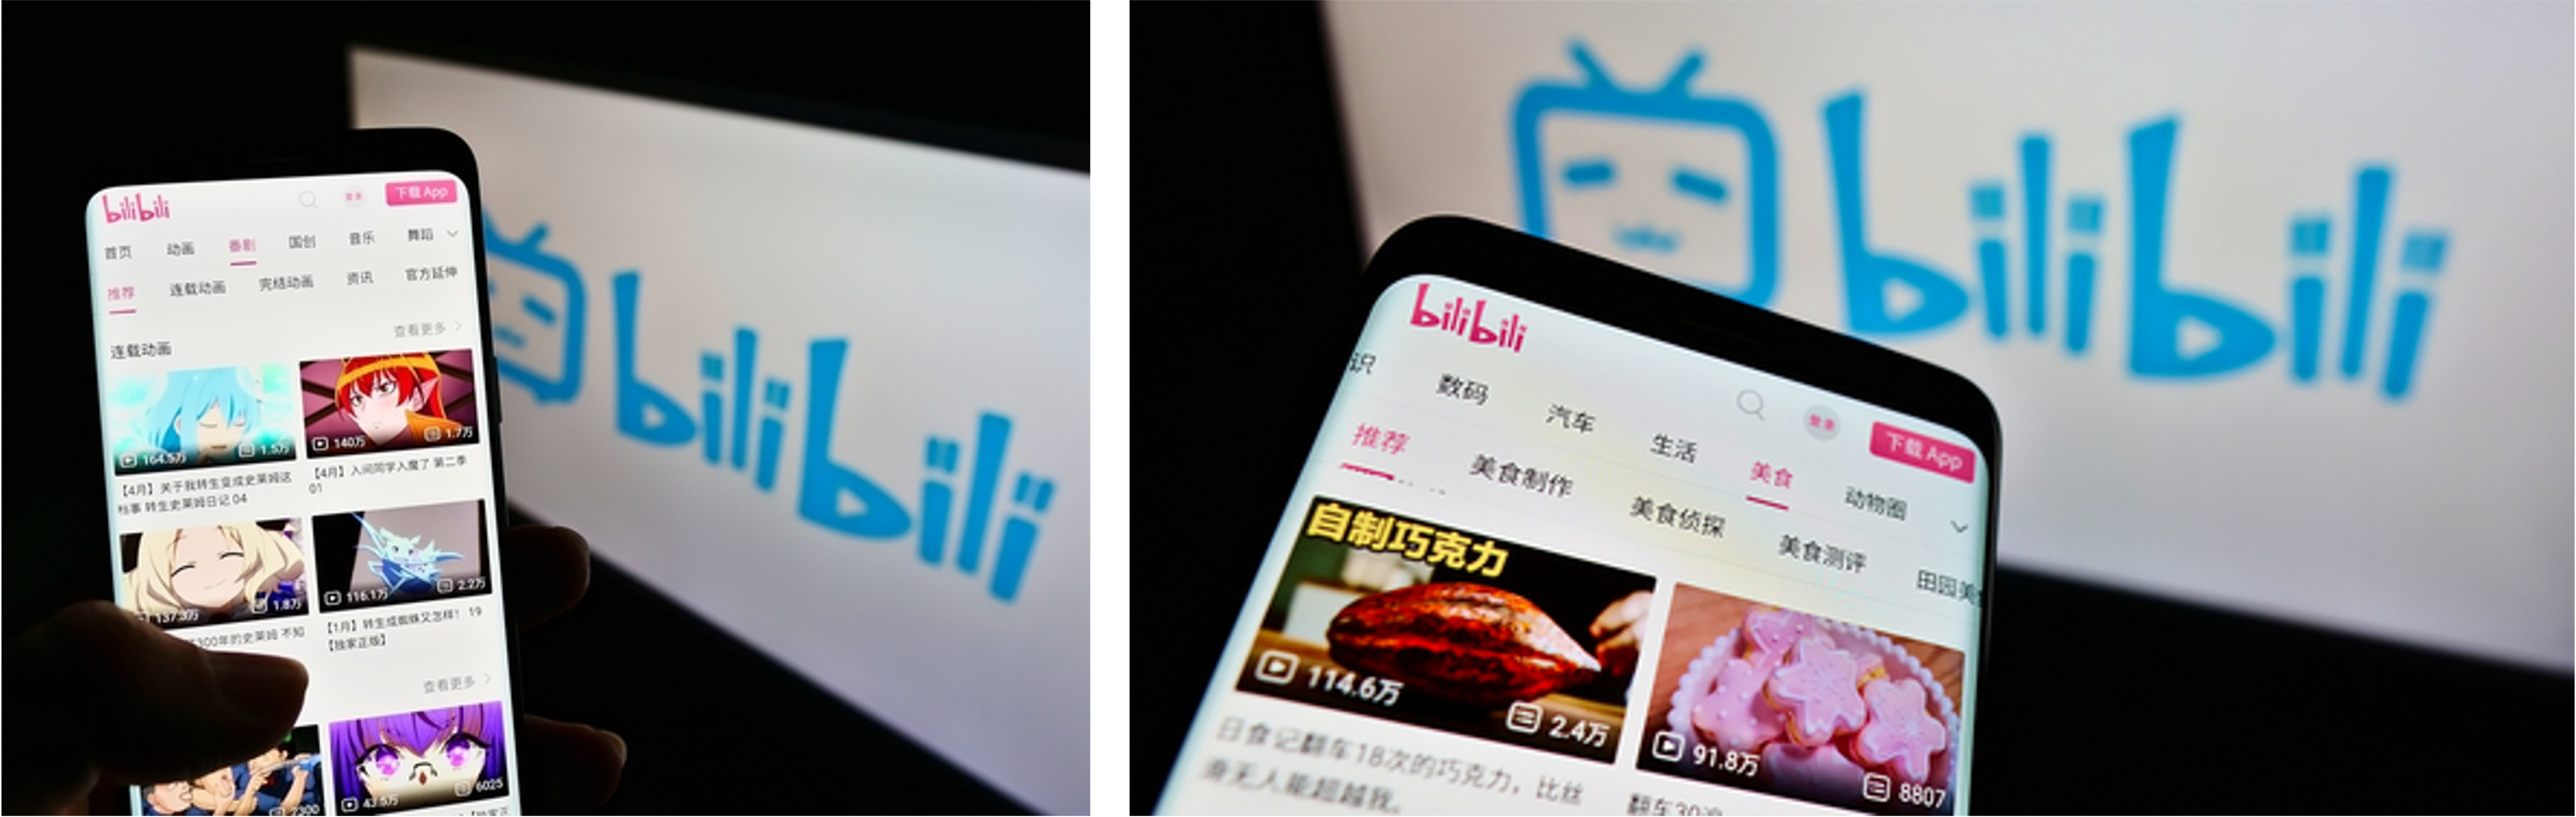 social media platforms & APPs in China: Bilibili